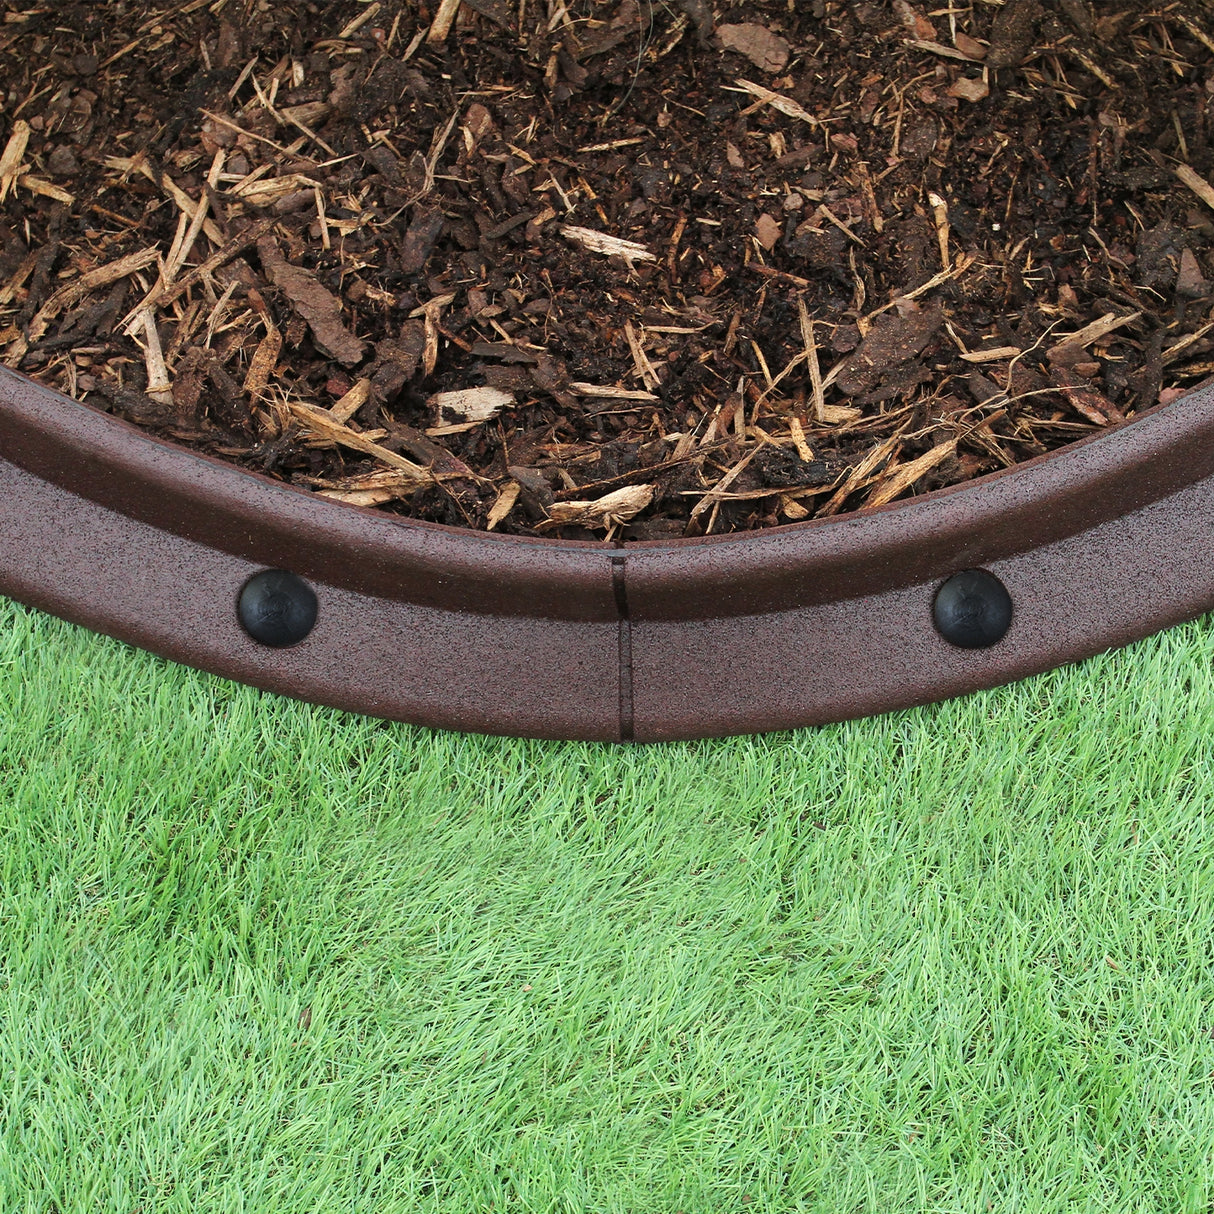 Flexible Lawn Edging Brown 1.2m x 4